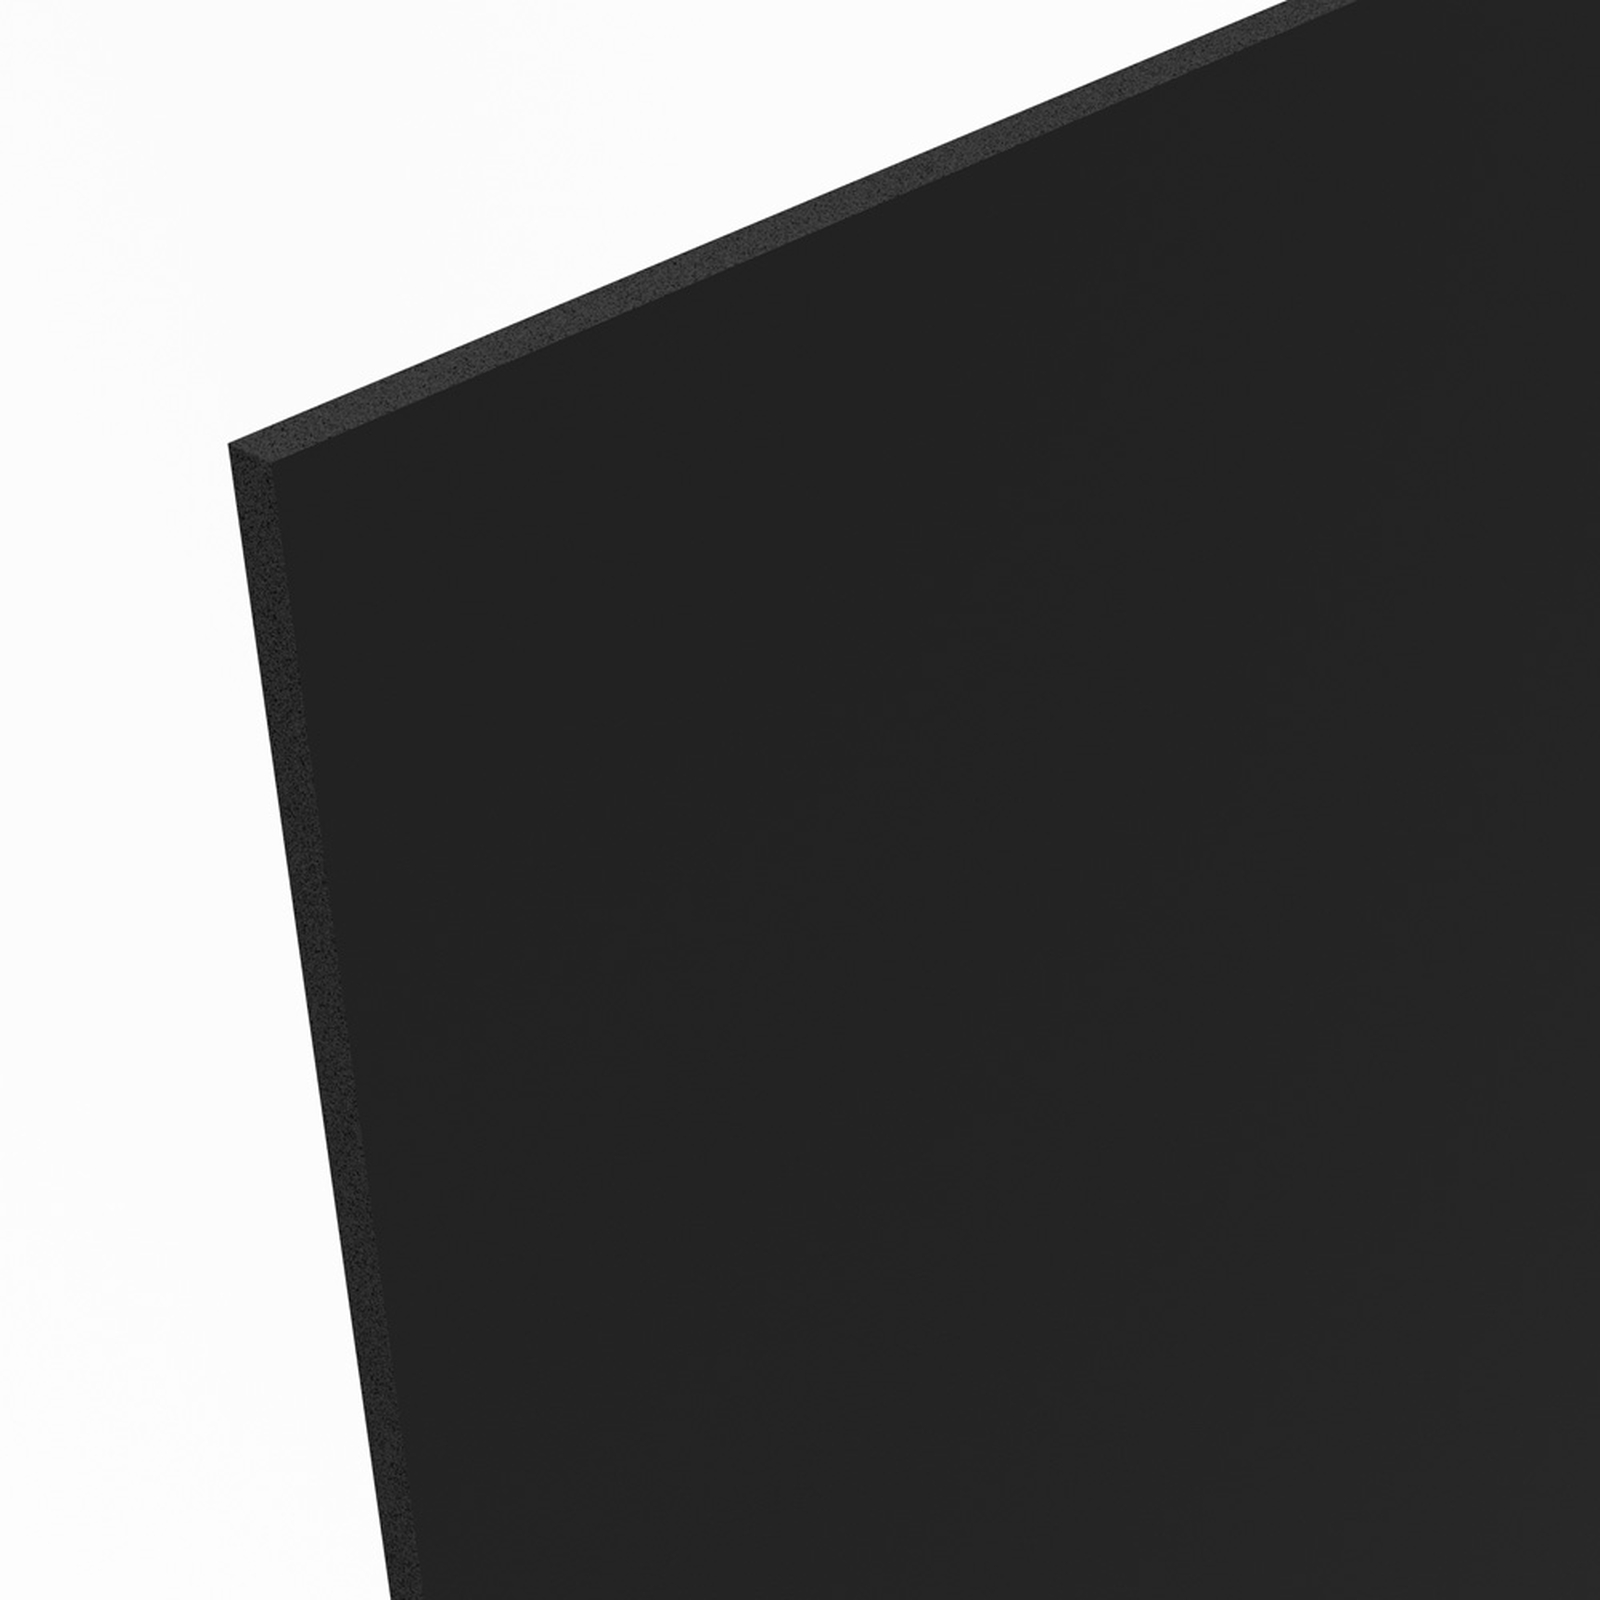 Freischaum PVC Platten weiß schwarz/ grau Länge bis 3050 mm wählbar Hartschaum 